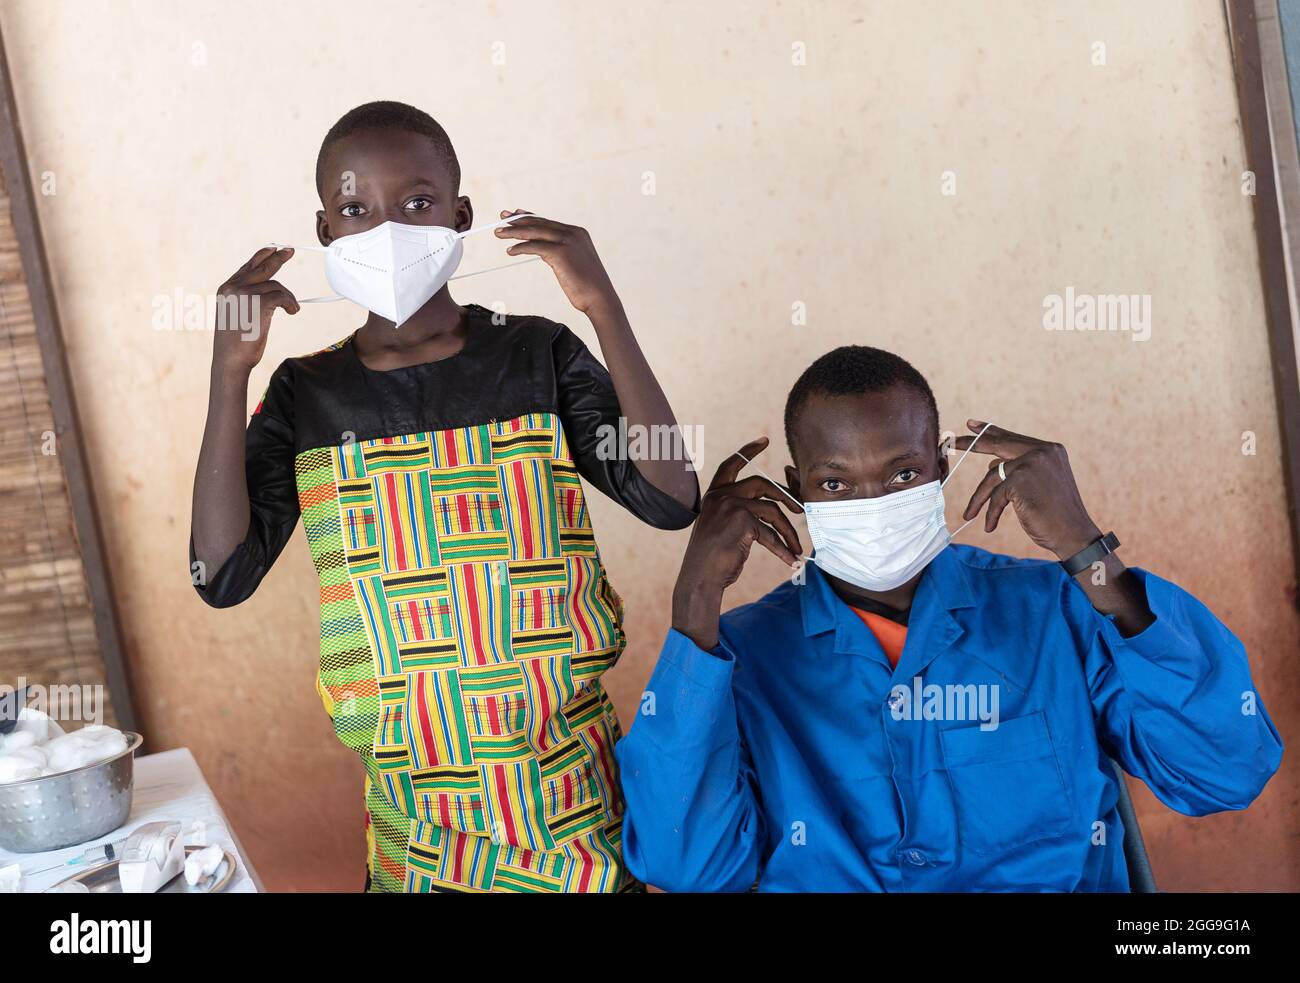 Nero africano ragazzo e medico mostrando come indossare correttamente una maschera protettiva per prevenire l'infezione virale Foto Stock